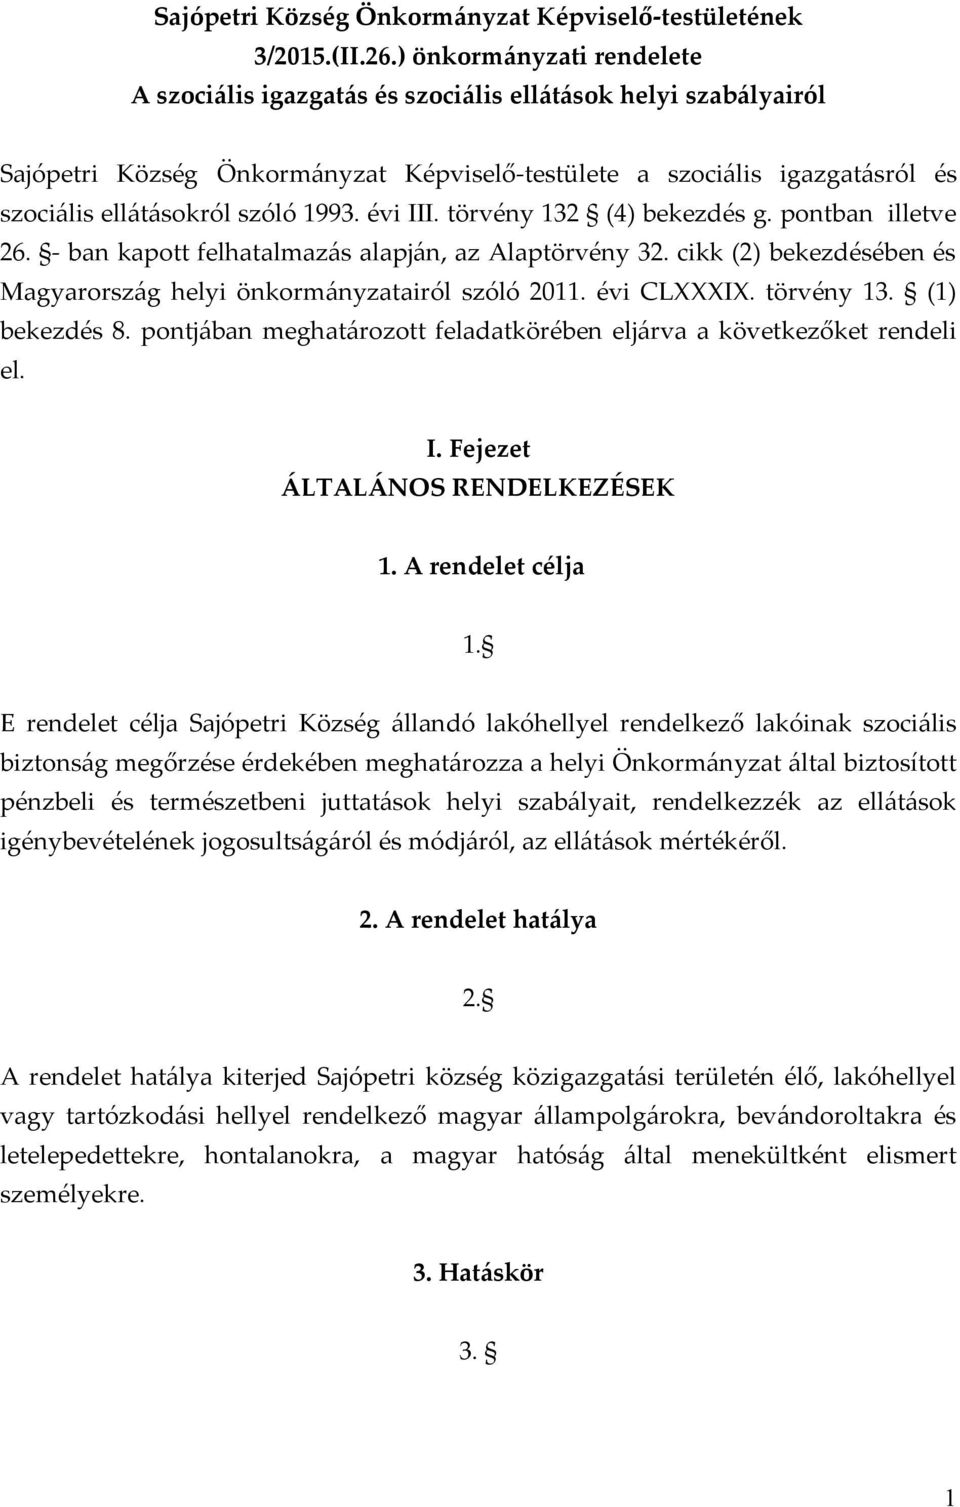 1993. évi III. törvény 132 (4) bekezdés g. pontban illetve 26. - ban kapott felhatalmazás alapján, az Alaptörvény 32. cikk (2) bekezdésében és Magyarország helyi önkormányzatairól szóló 2011.